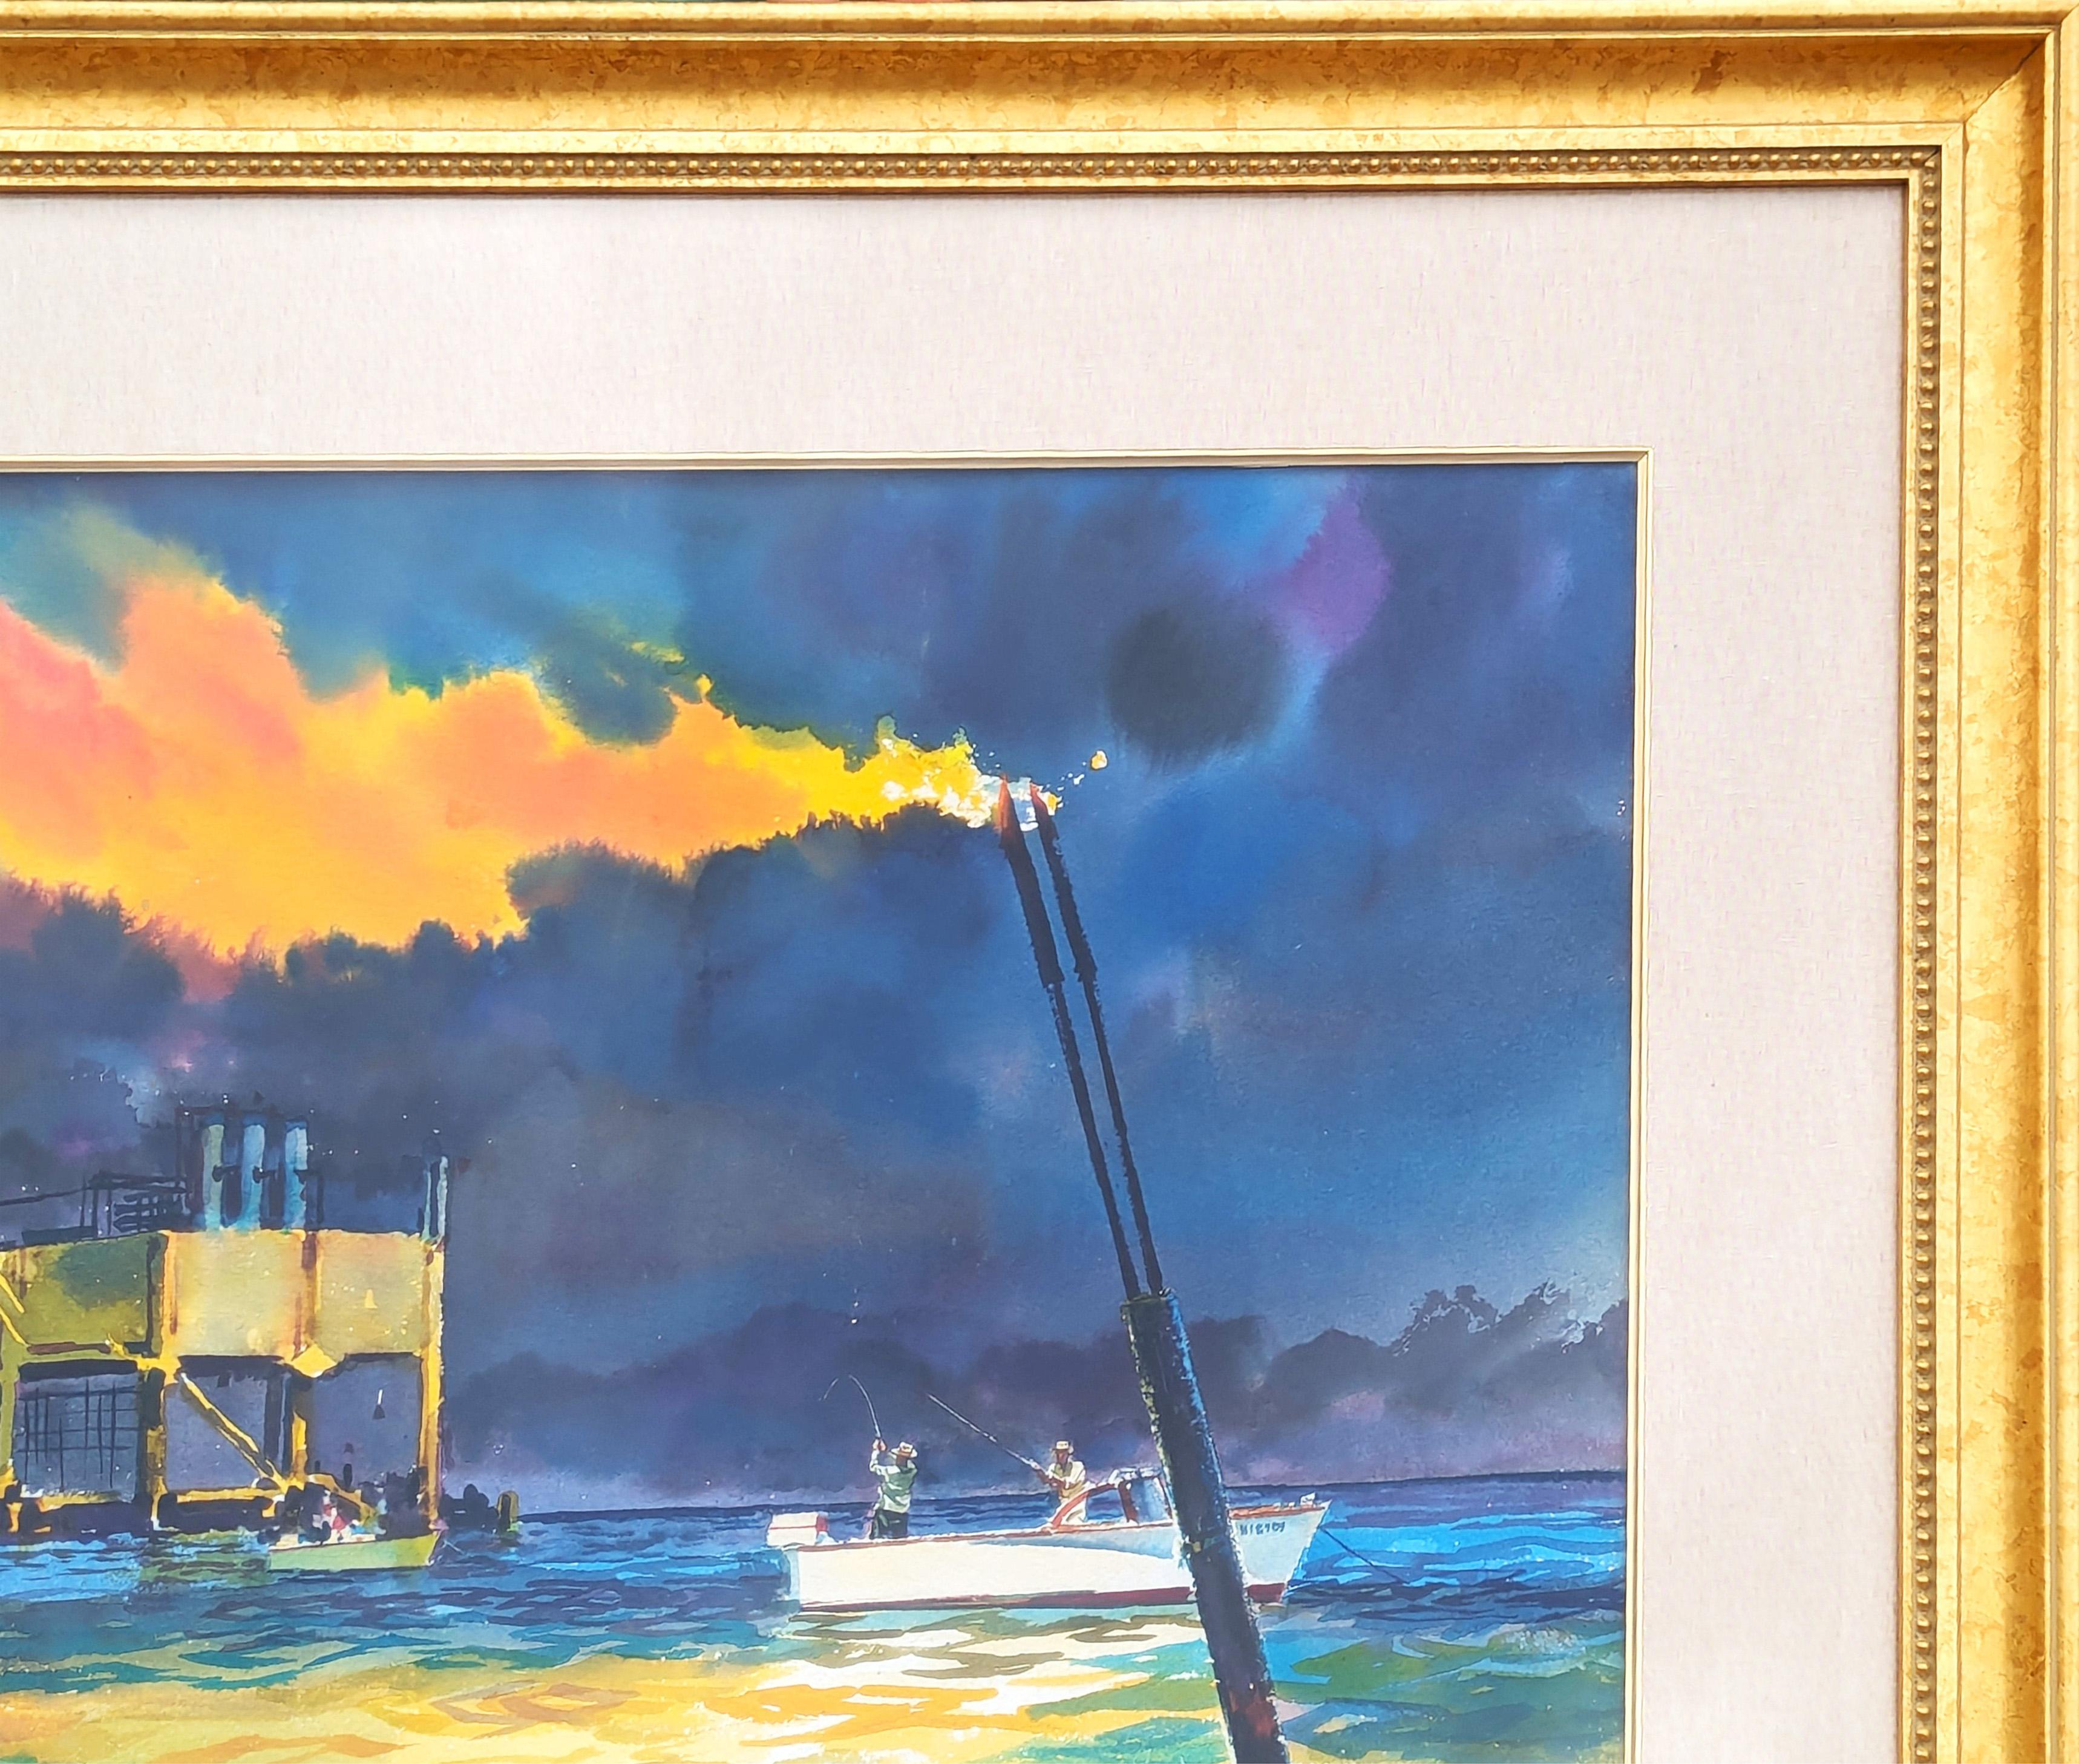 Moderne Aquarellmalerei von John P. Cowan, einem bekannten Sportkünstler. Das Werk wurde ursprünglich von Cowan geschaffen, um von Schlumberger als Teil ihres Fischereikalenders verwendet zu werden. Signiert in der linken unteren Ecke der